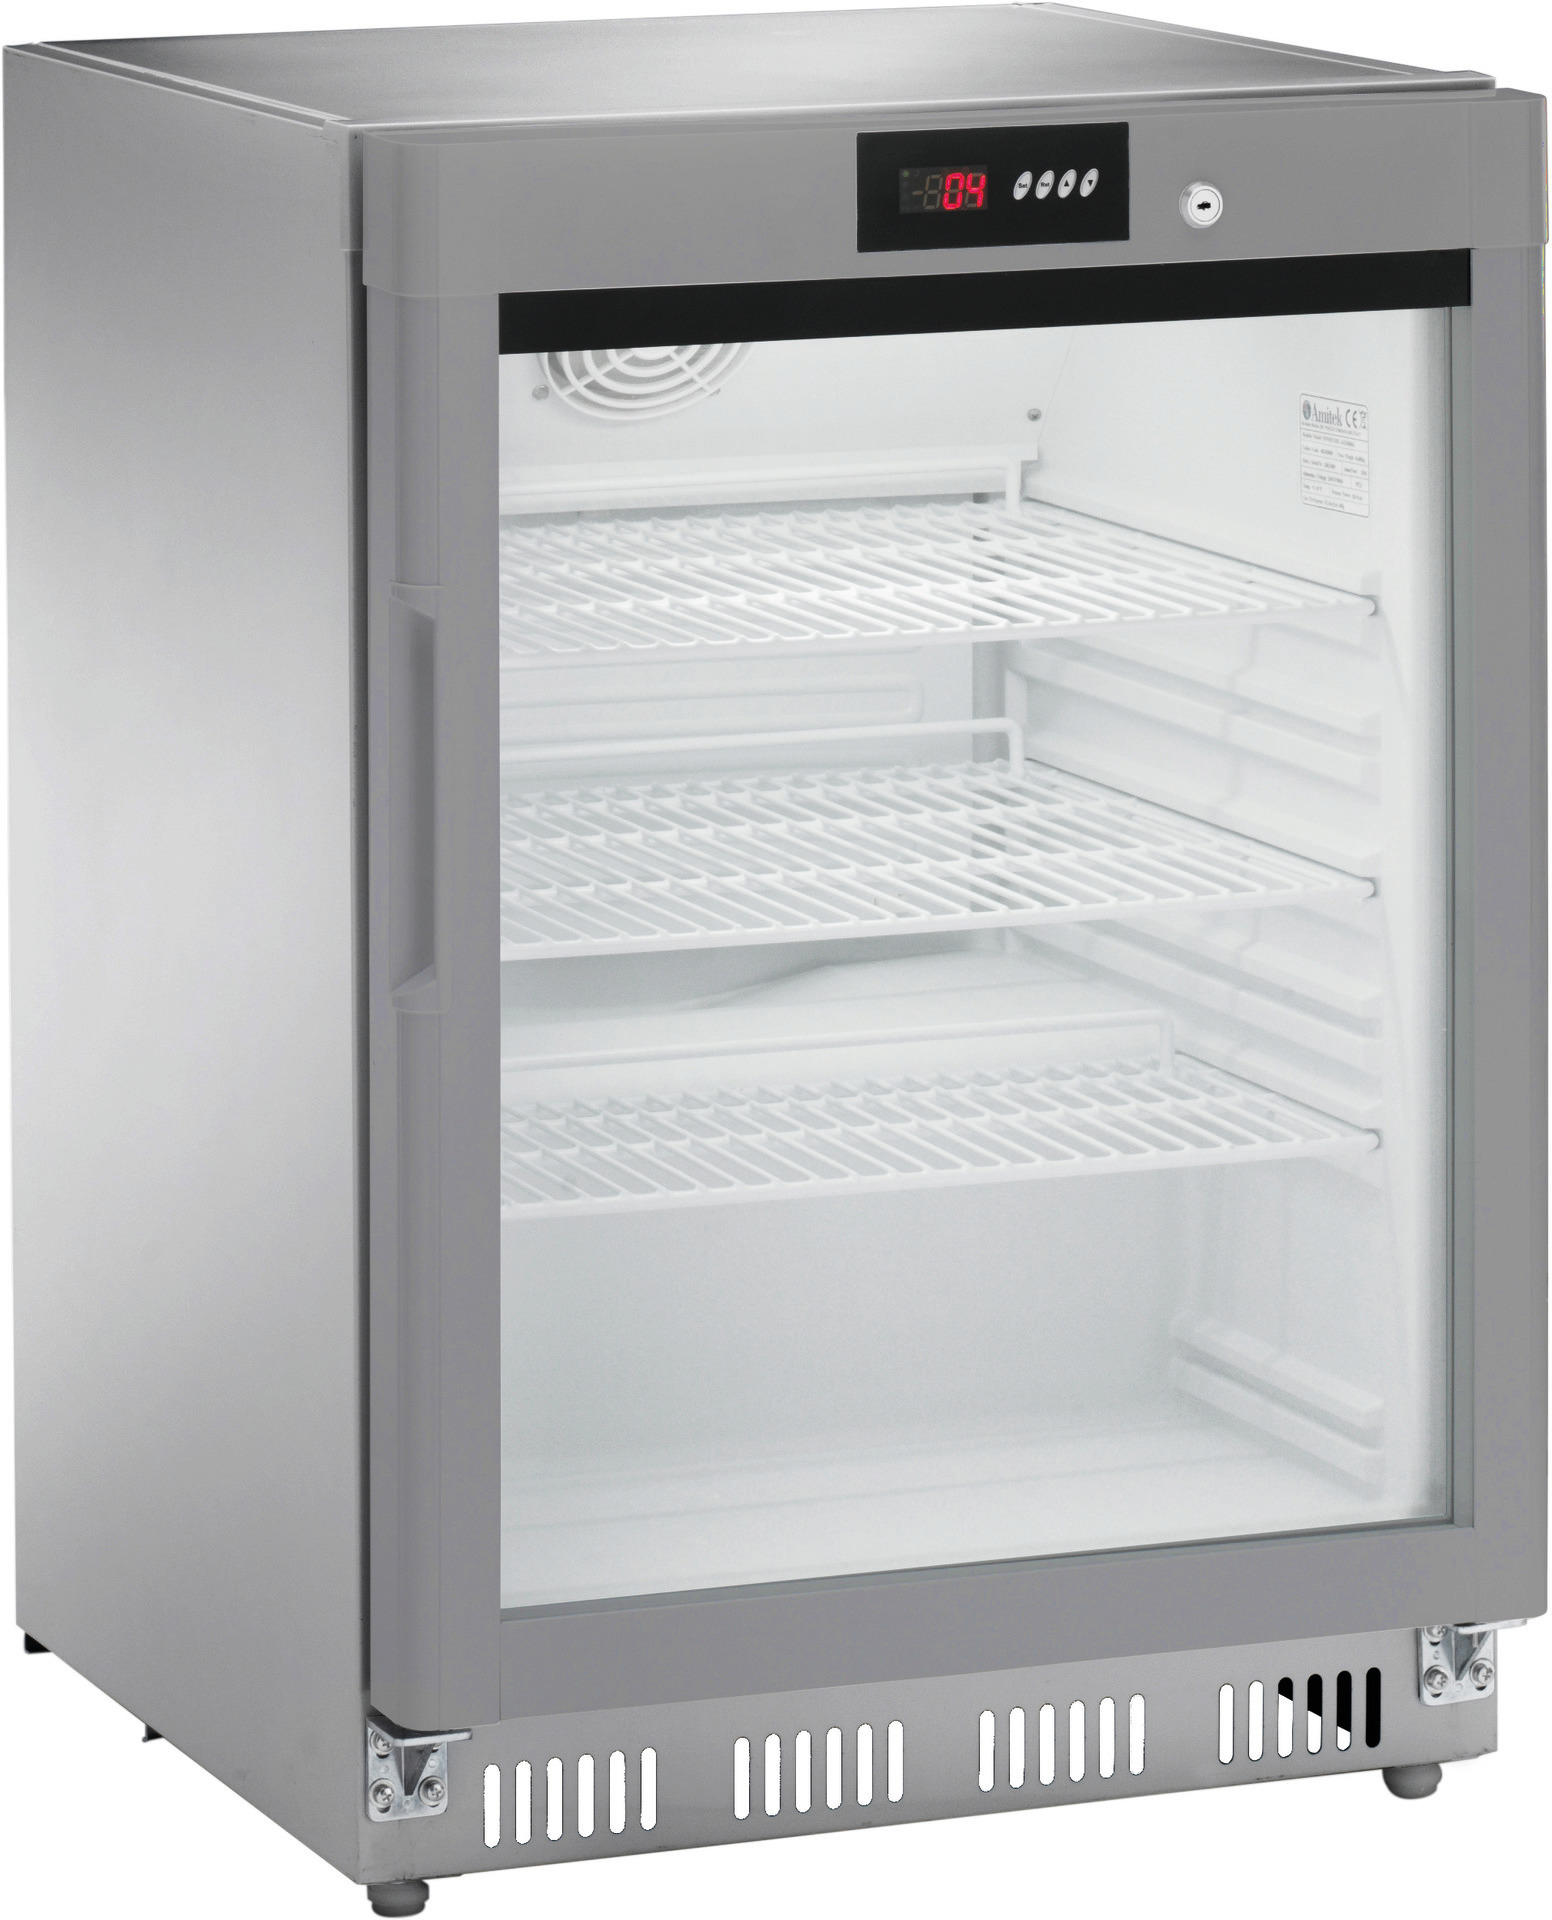 Gastro Kühlschränke, Gastronomie